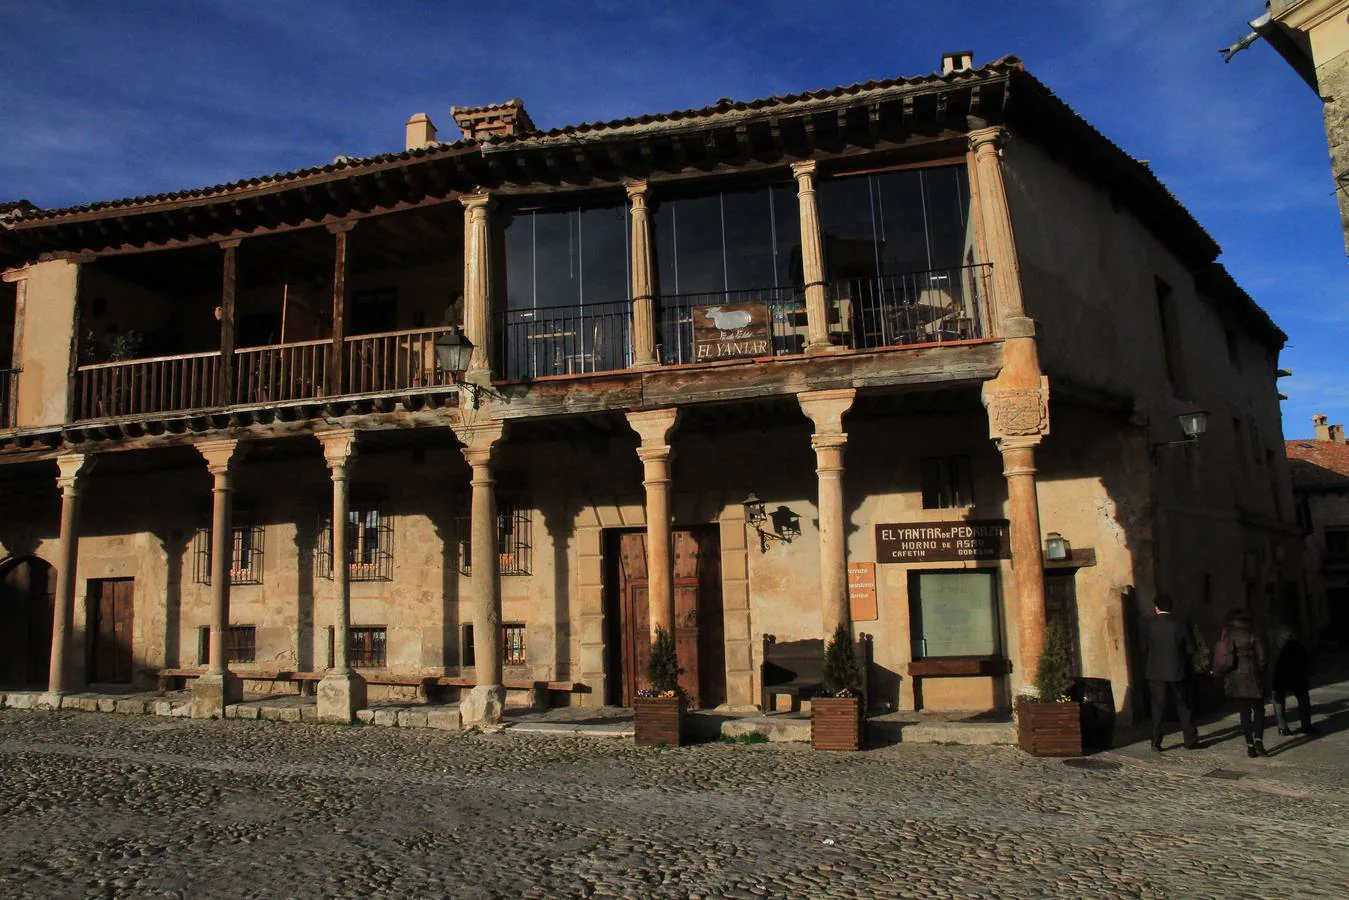 Pedraza (Segovia). La Villa medieval está amurallada, y el buen estado de su cuidado Patrimonio lo hizo ser declarado como Histórico en 1951. La mayoría de las casas y palacetes que embellecen el interior de la Villa, hacen hermoso su caminar, aún de empedrado medieval.